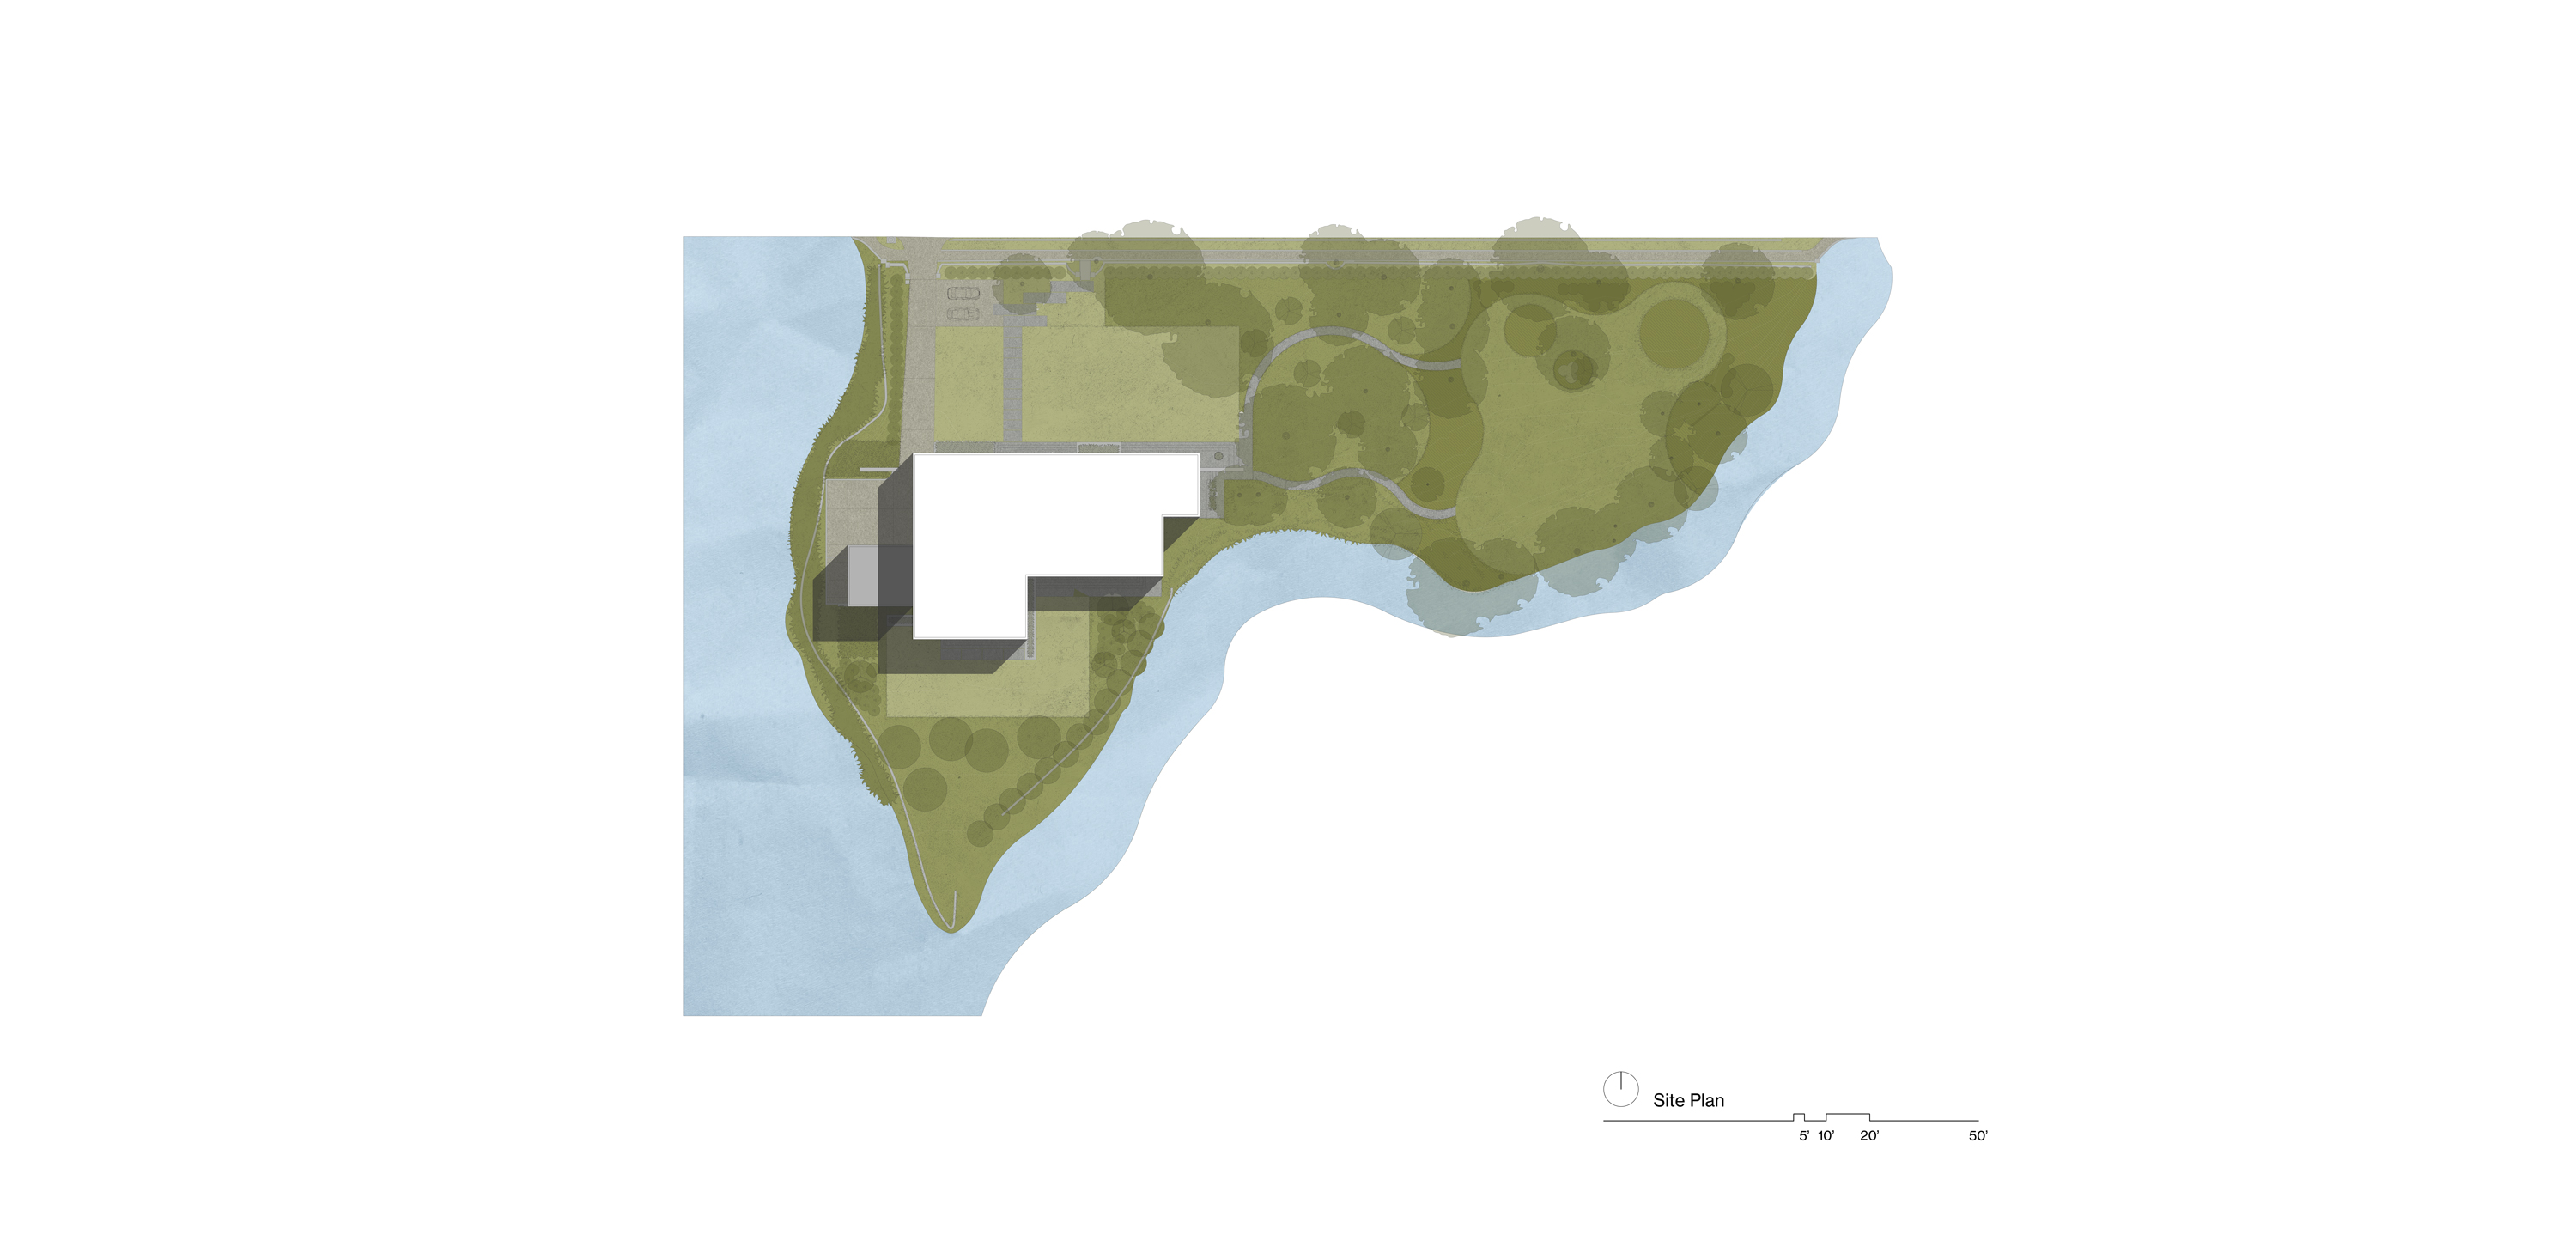 Site Plan of Kazoku House by Specht Novak Architects.